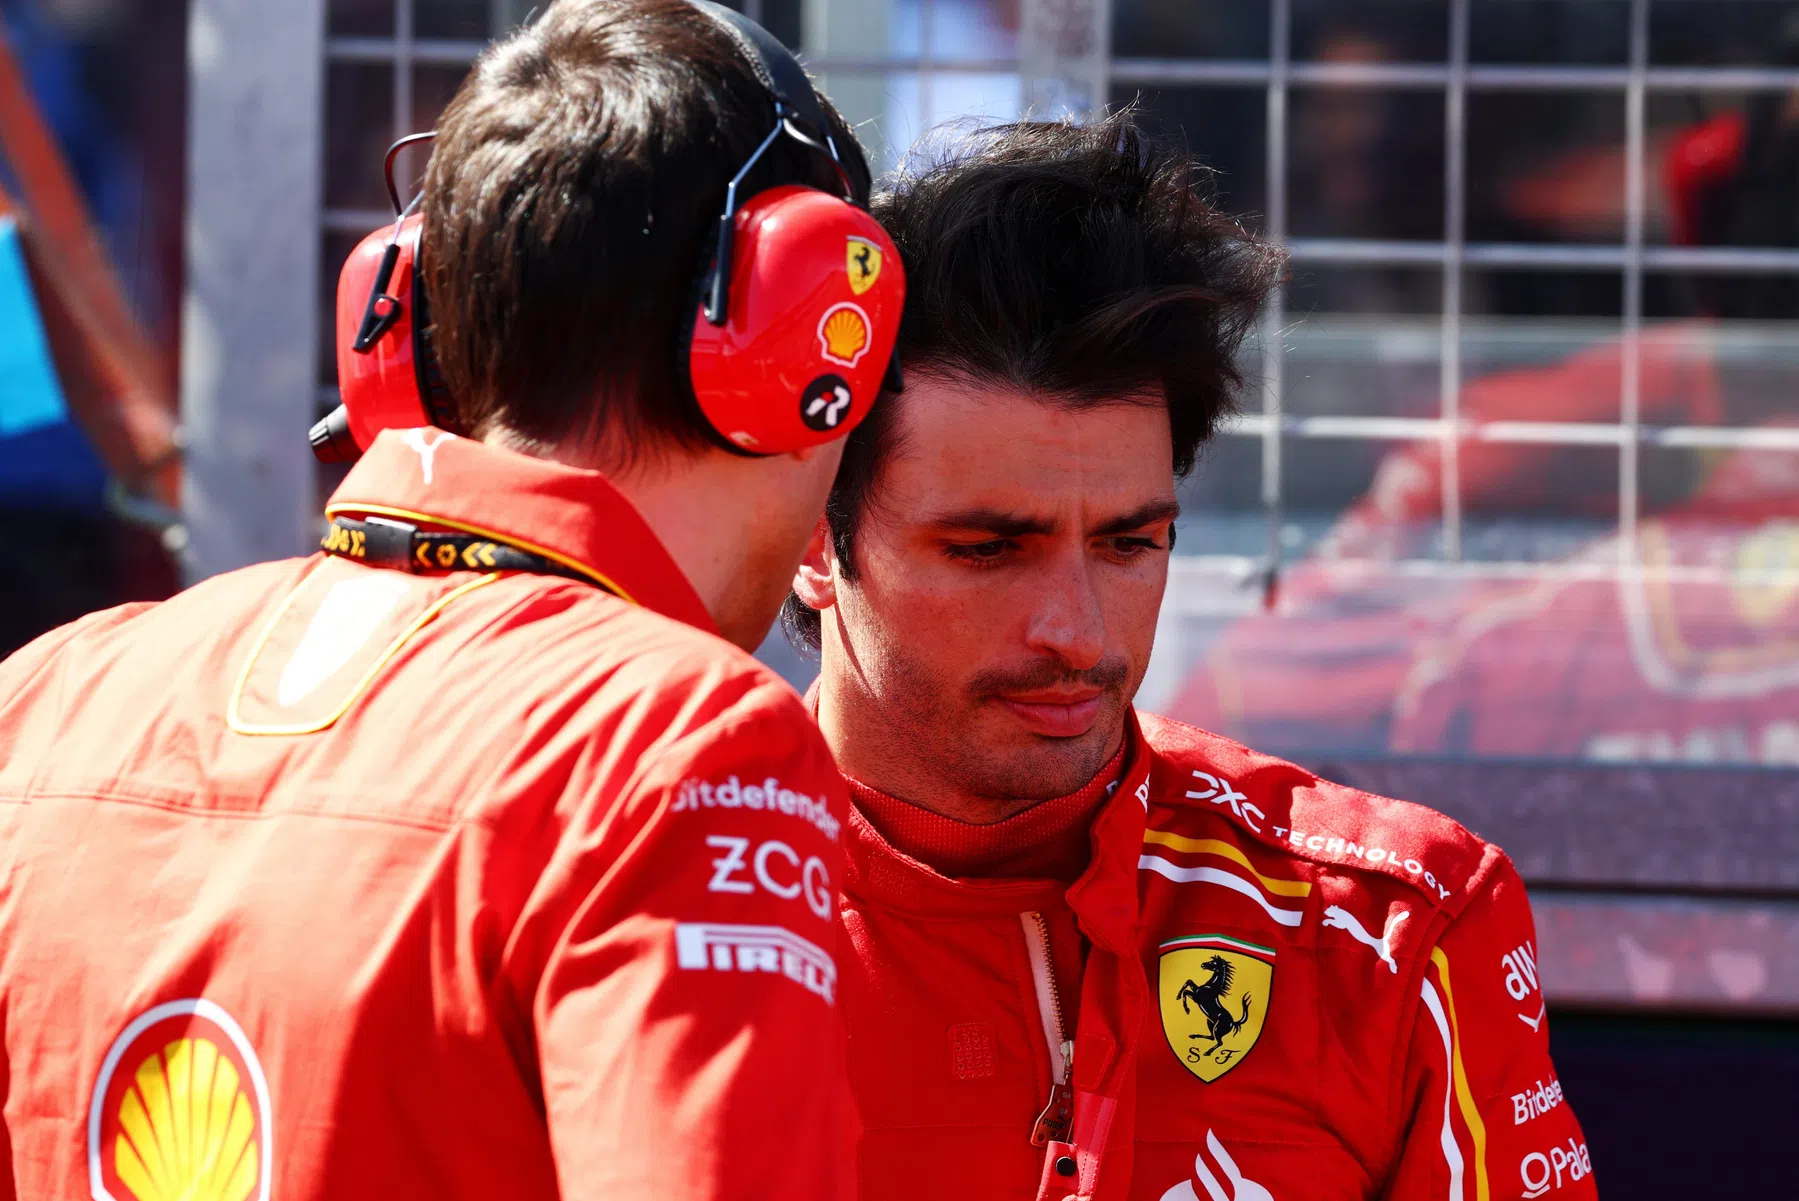 Sainz espera que a Ferrari possa desafiar a Red Bull com mais frequência